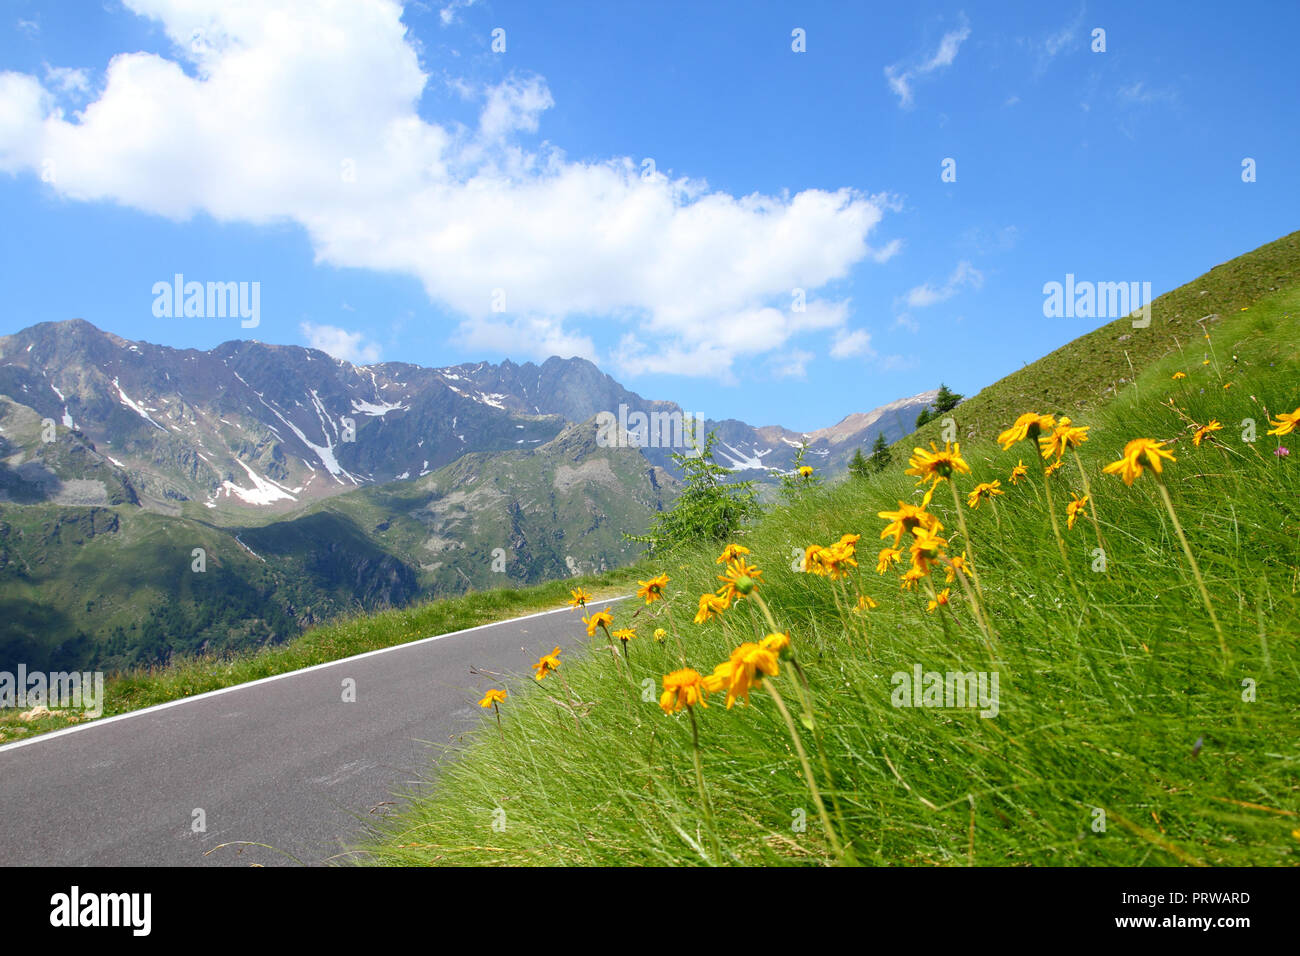 Italien, Nationalpark Stilfser Joch. Berühmte Straße zu Gavia Pass in der Ortlergruppe. Alpine Landschaft. Stockfoto